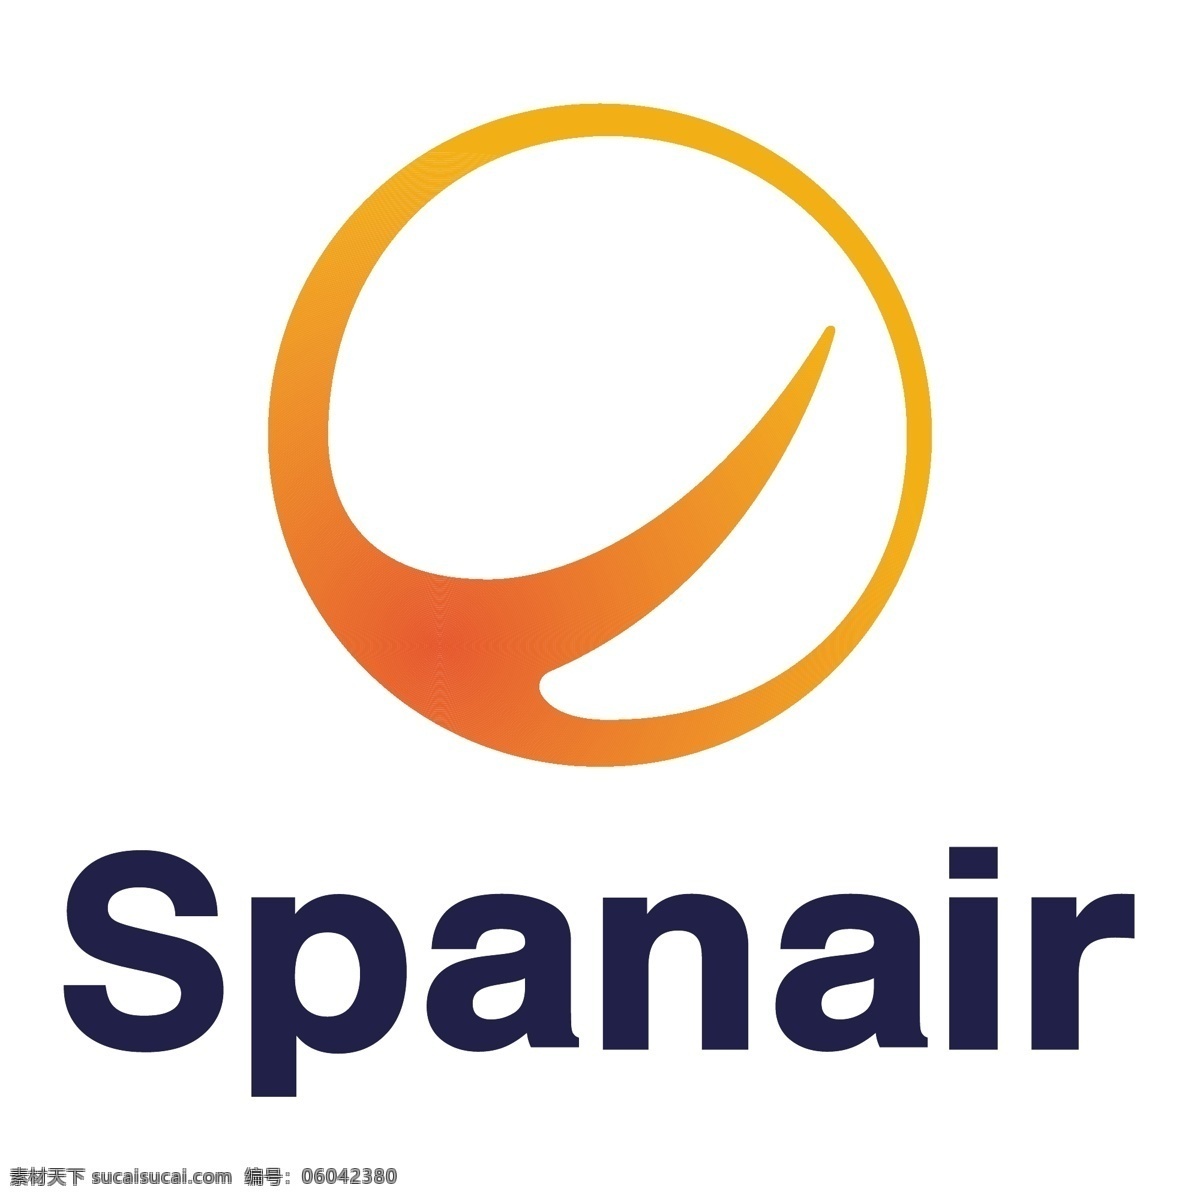 西班牙 航空公司 标识 公司 免费 品牌 品牌标识 商标 矢量标志下载 免费矢量标识 矢量 psd源文件 logo设计